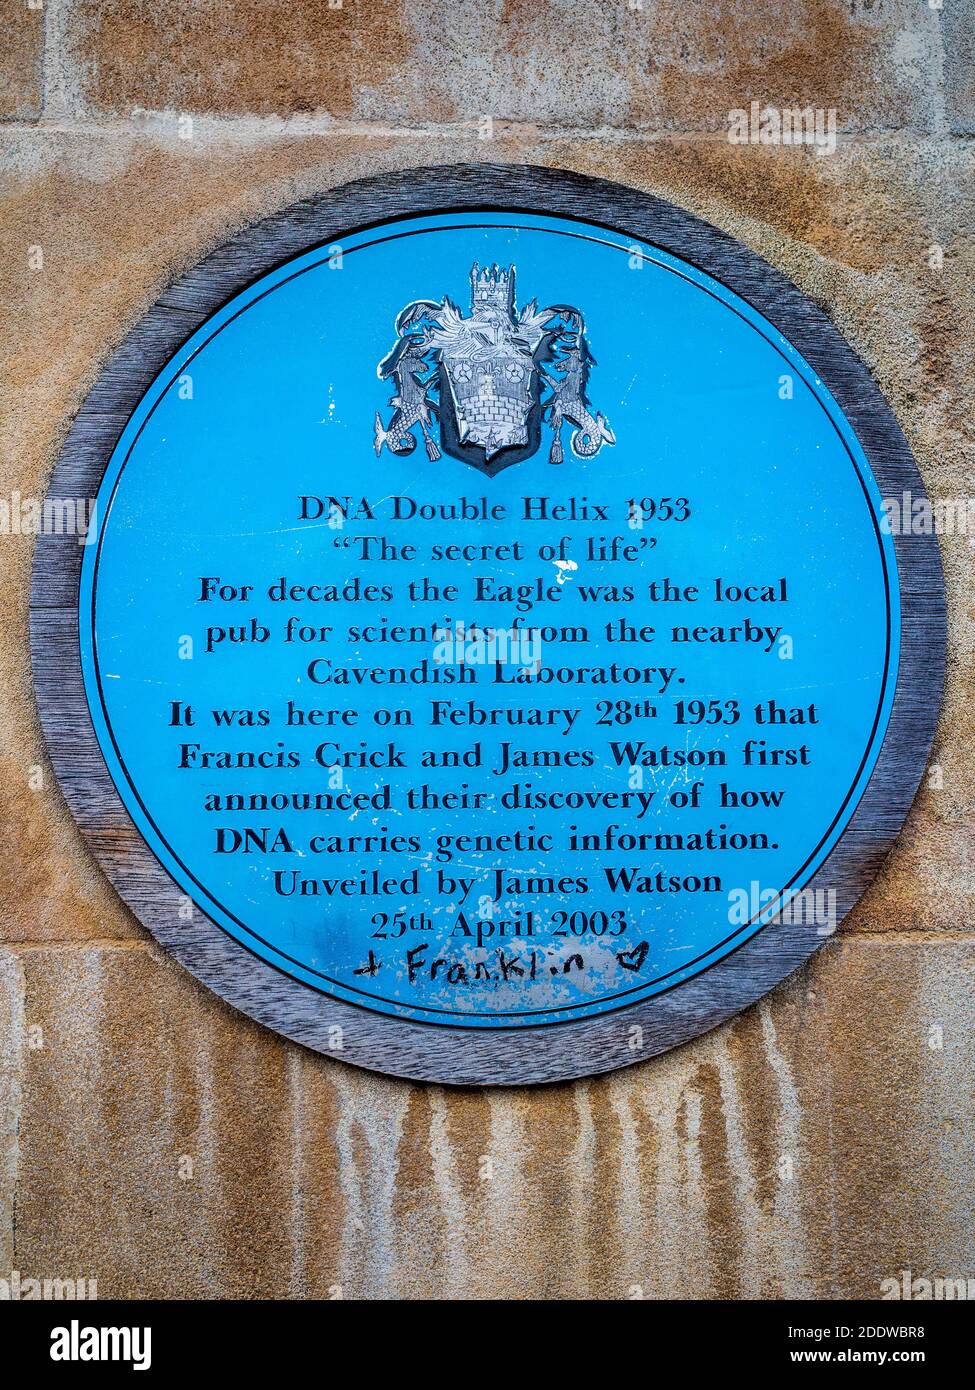 Targa commemorativa della scoperta della struttura a doppia elica del DNA di Crick e Watson sull'Eagle Pub Cambridge - aggiunto il nome di Rosalind Franklin. Foto Stock